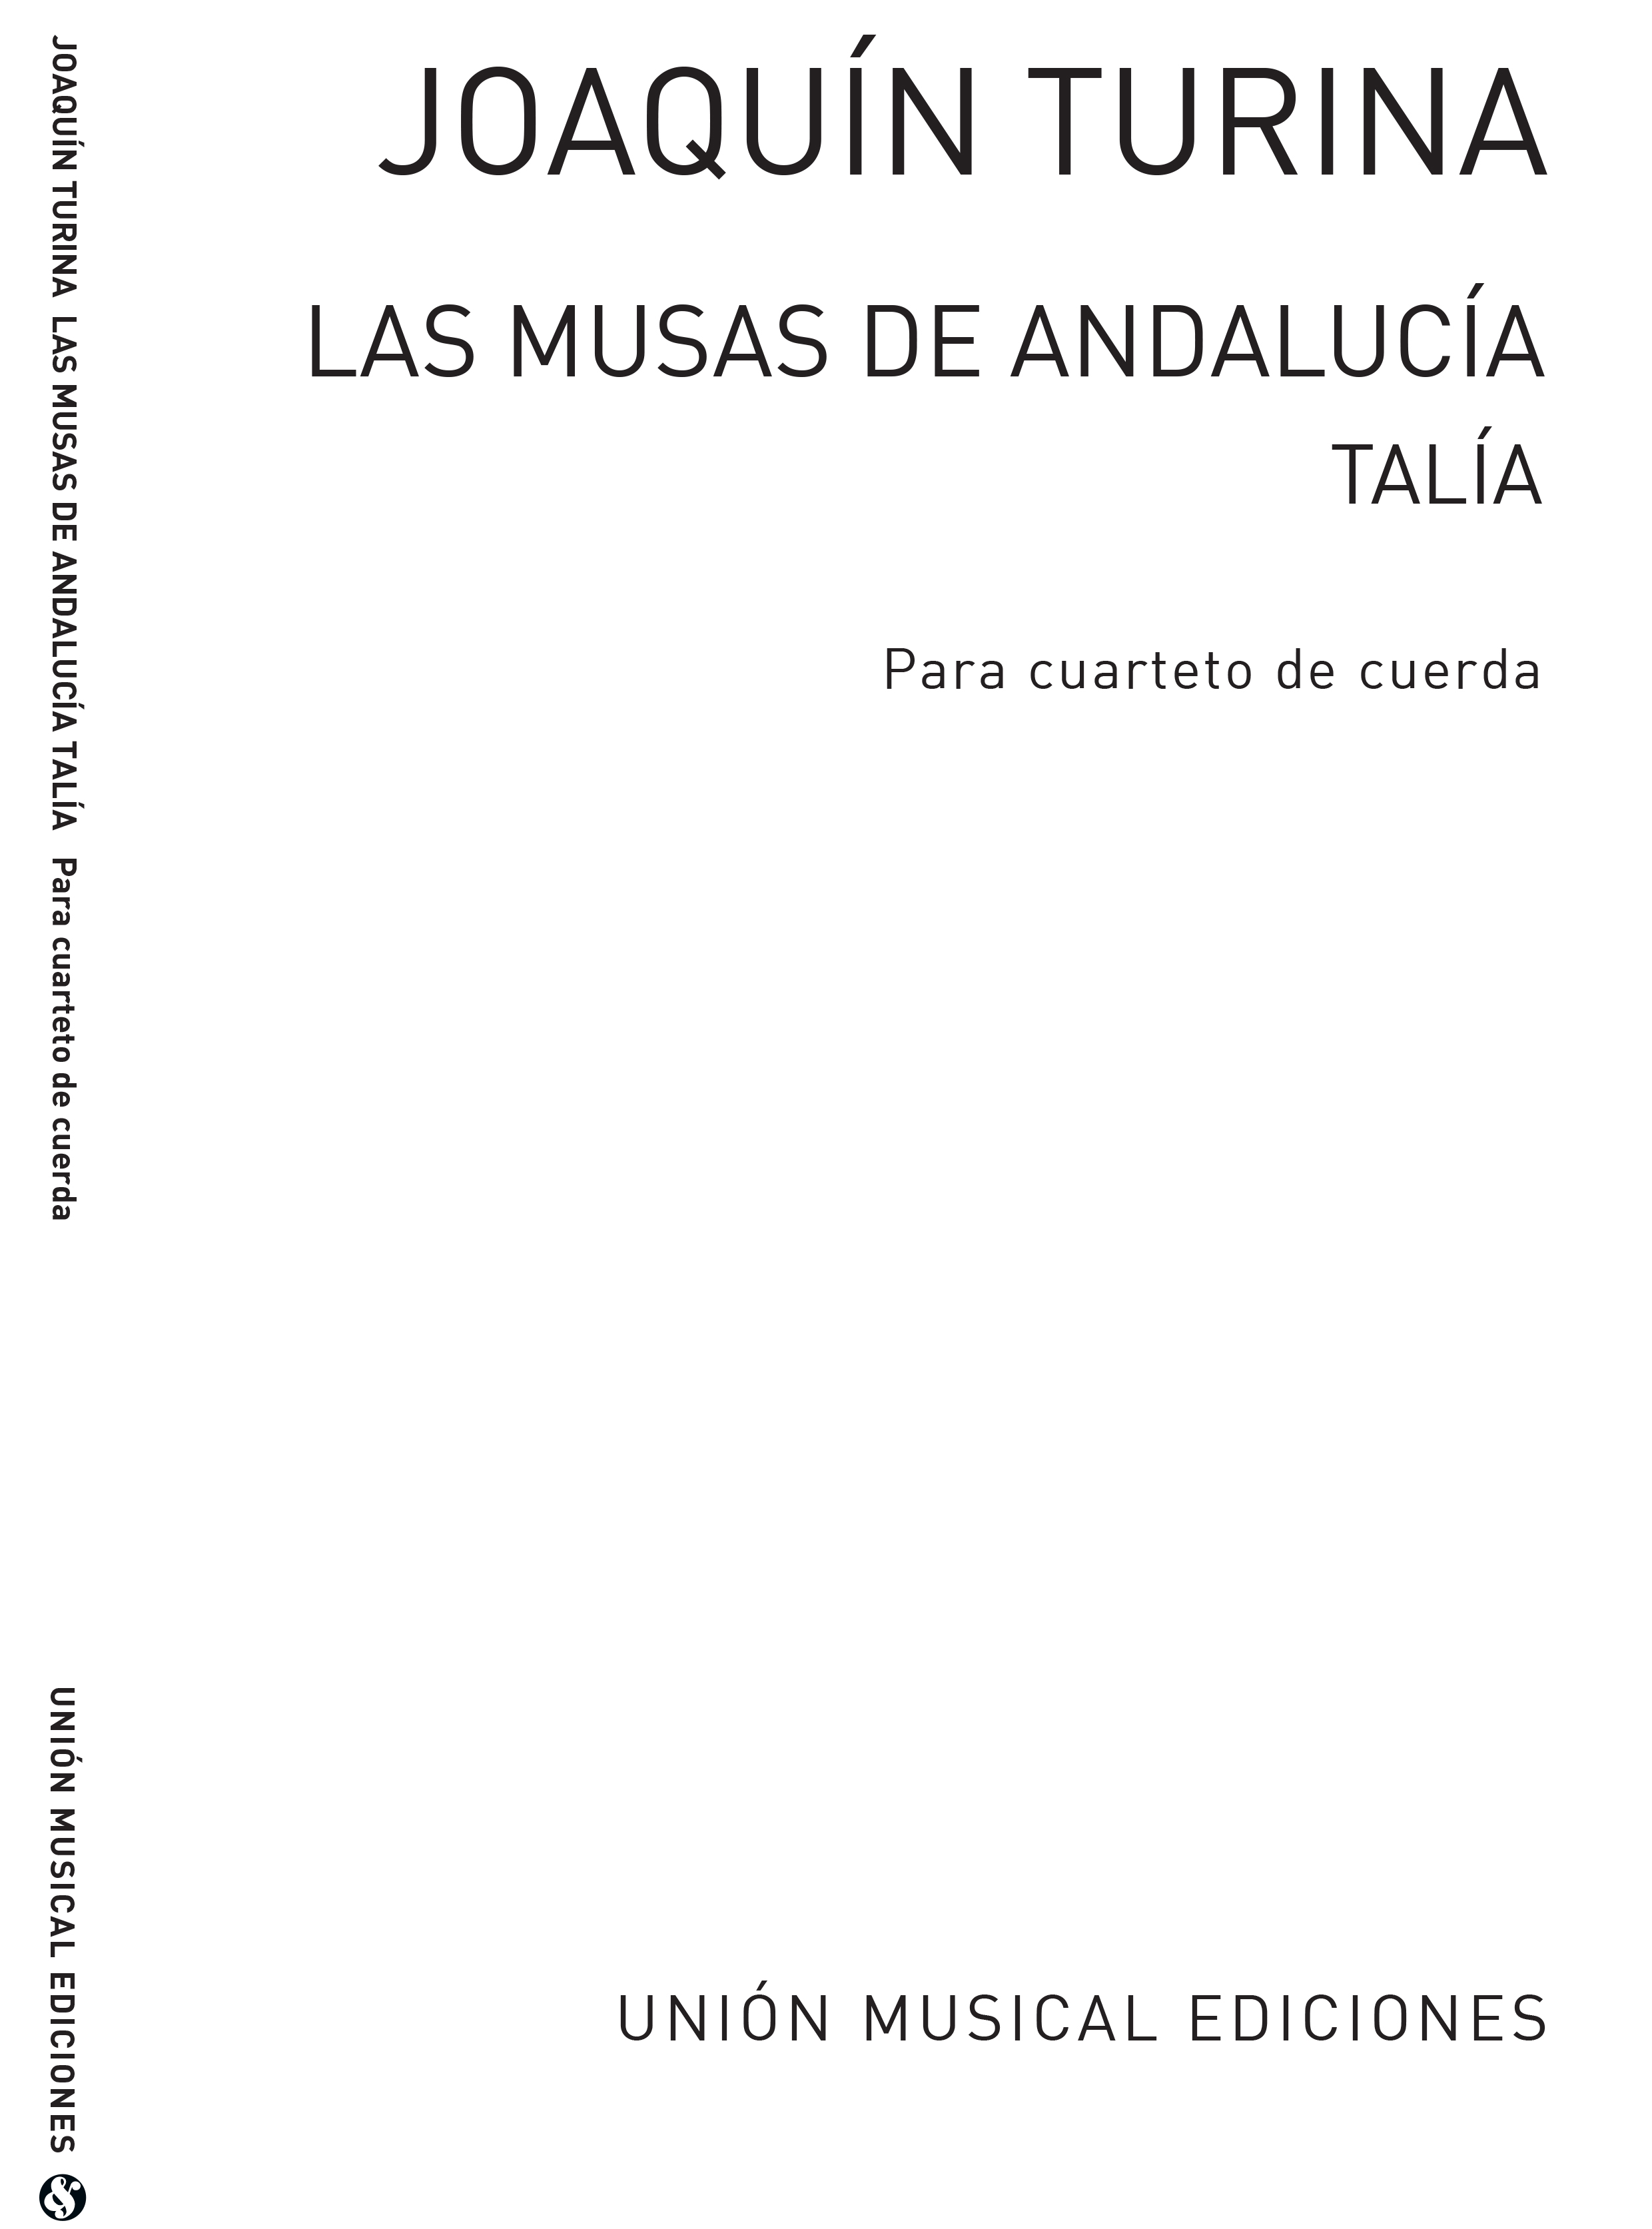 Joaquín Turina: Talia No.3 De Las Musas De Andalucia: String Quartet